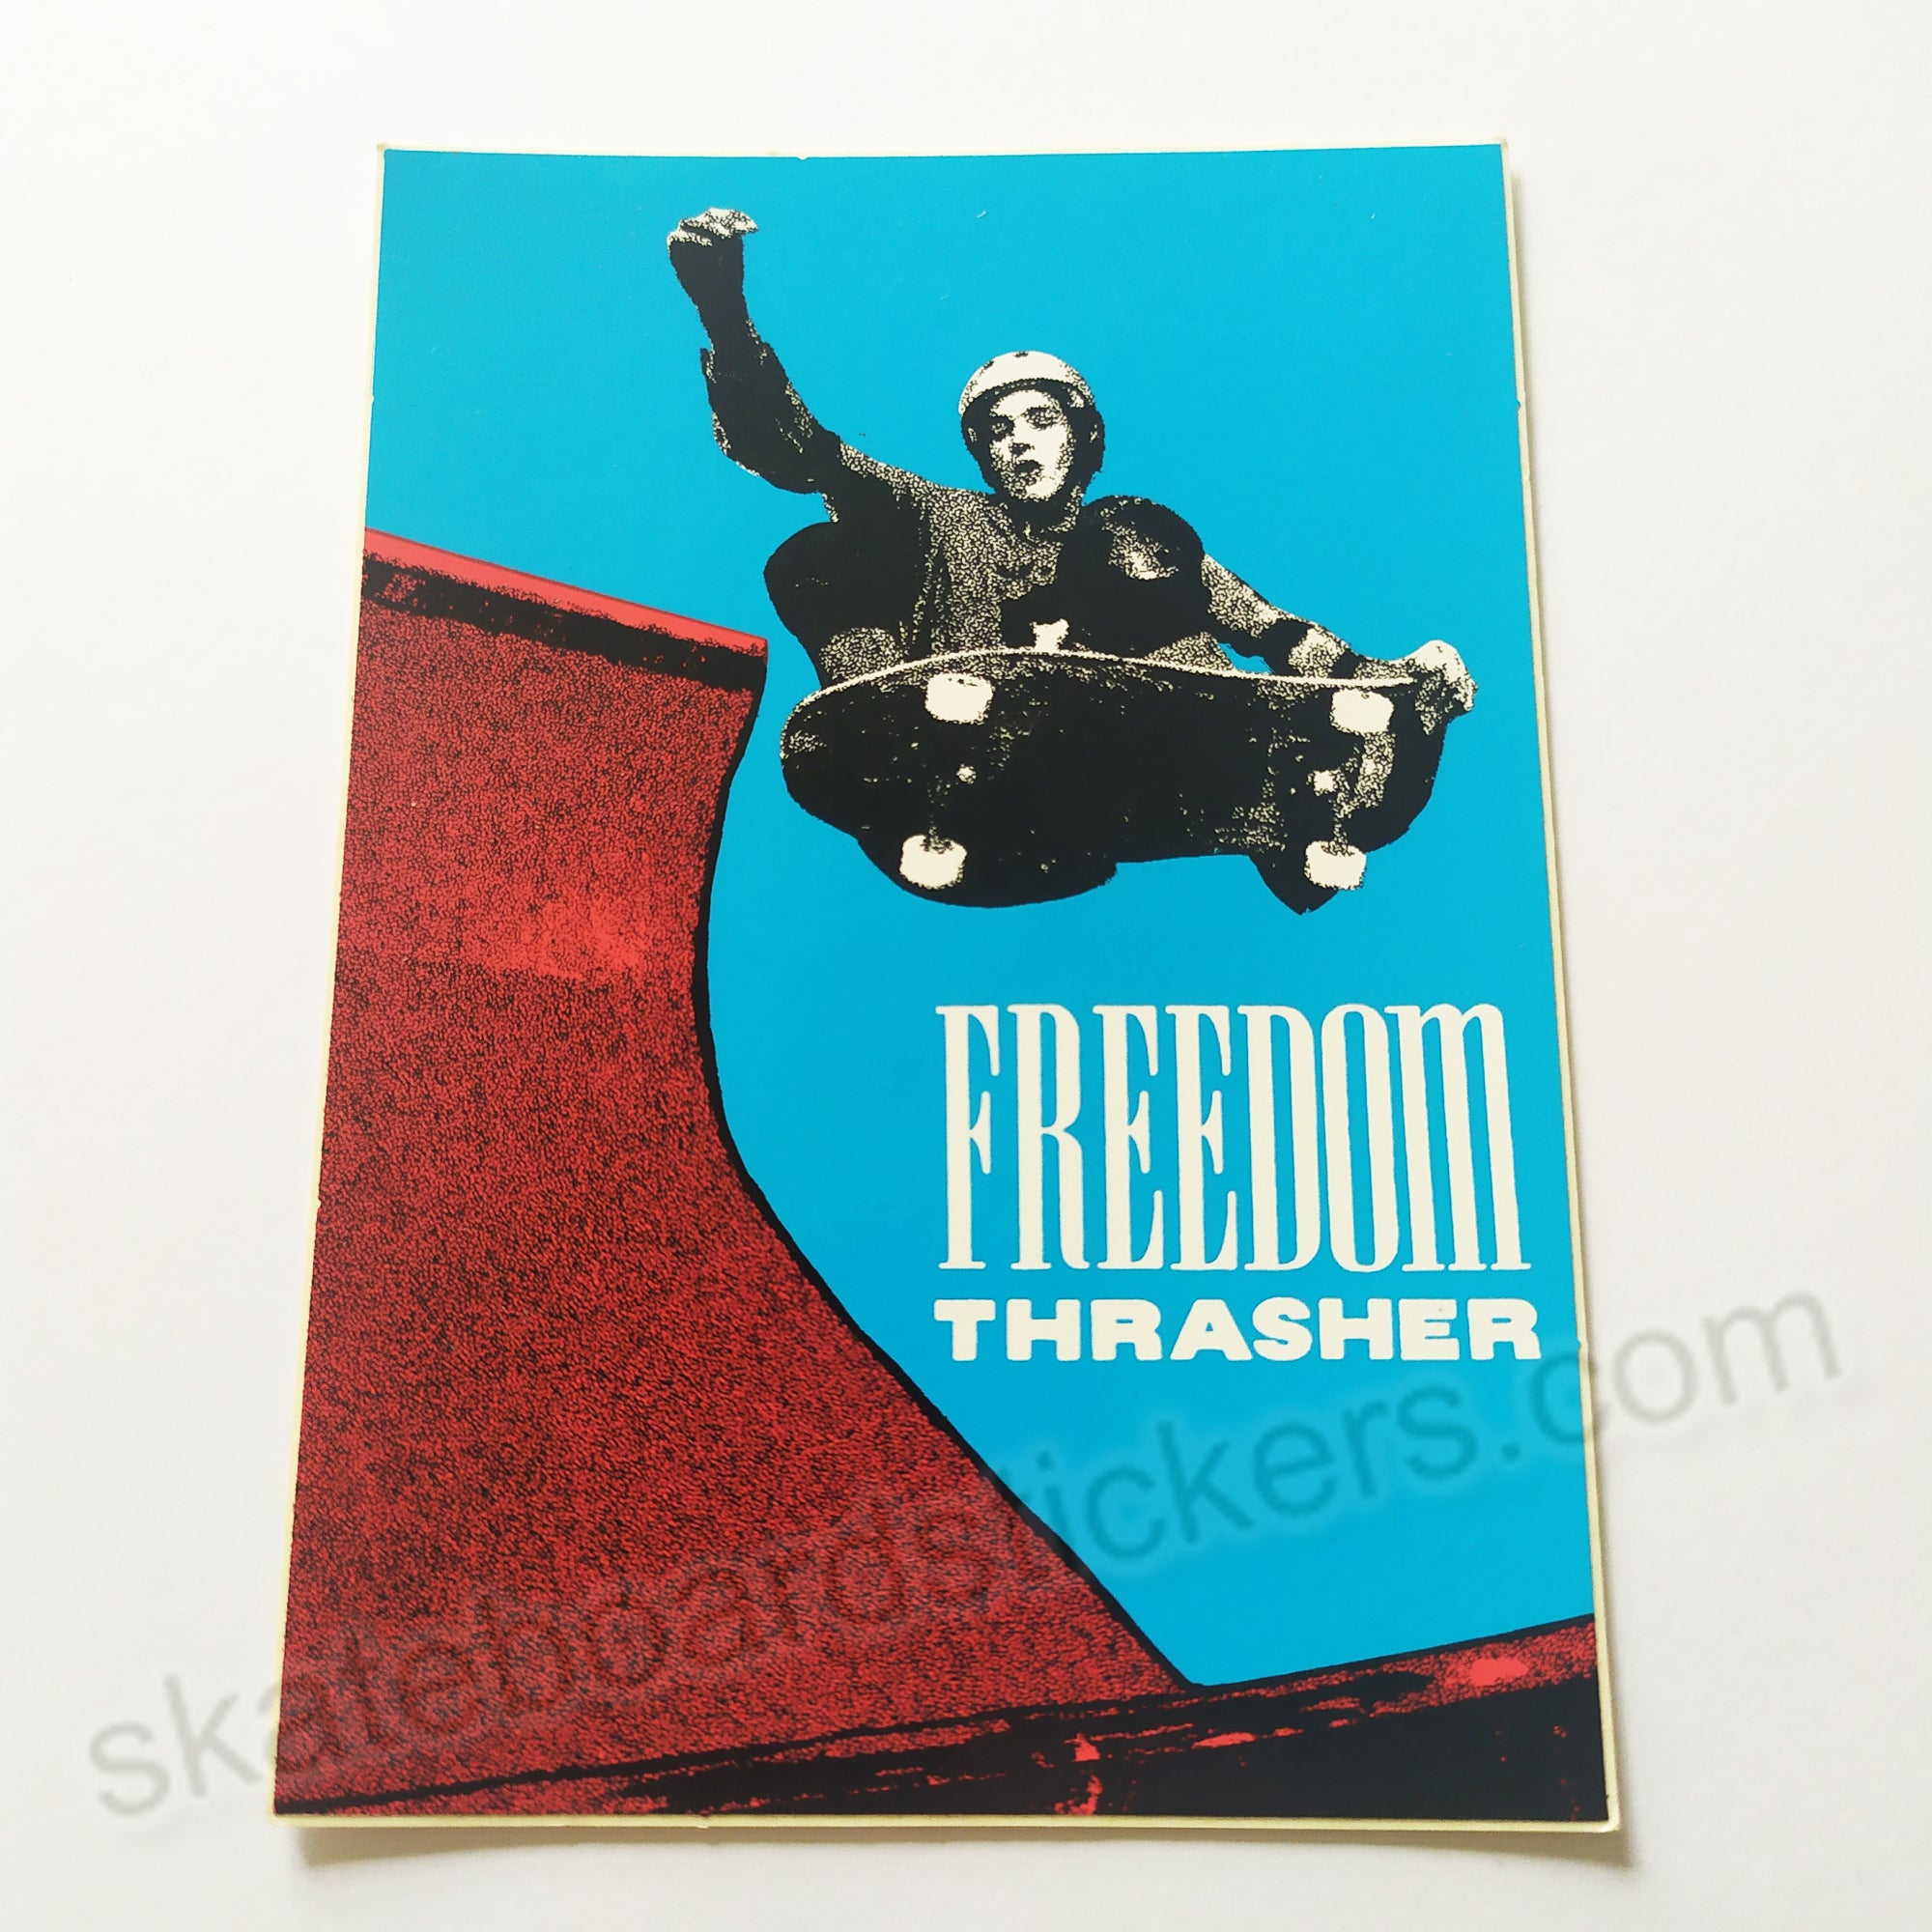 Thrasher Magazine "Freedom Thrasher" Old School Skateboard Sticker - SkateboardStickers.com